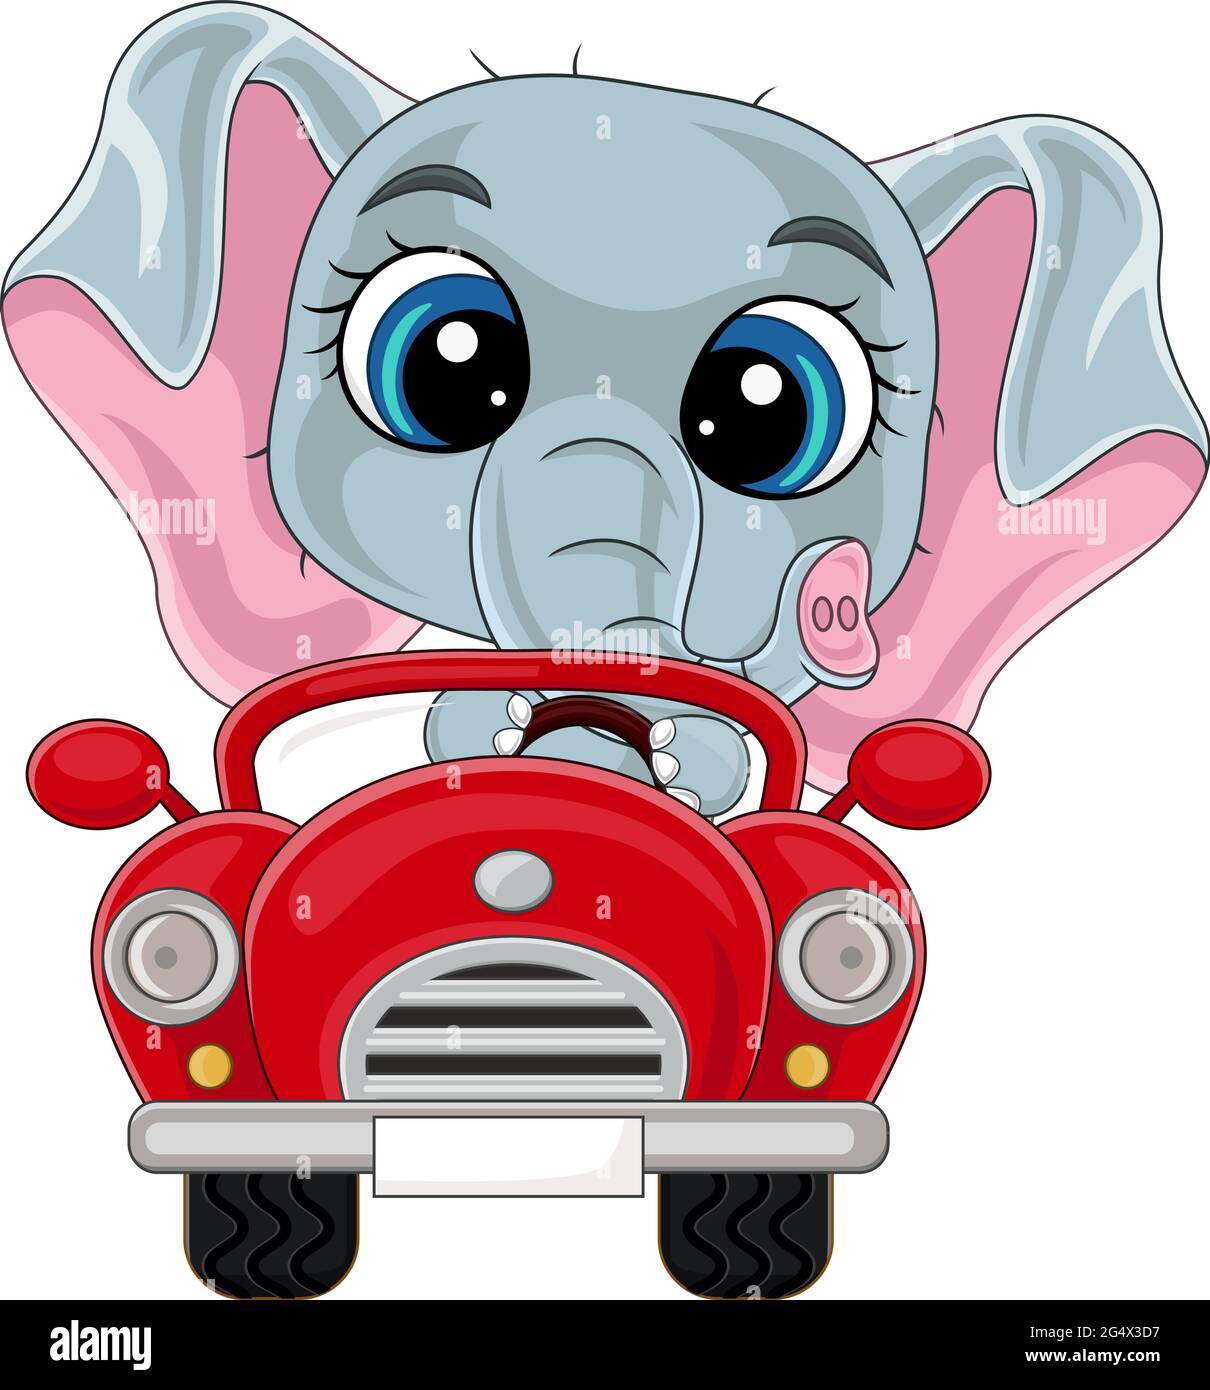 Dessin animé bébé éléphant conduite voiture rouge Illustration de Vecteur